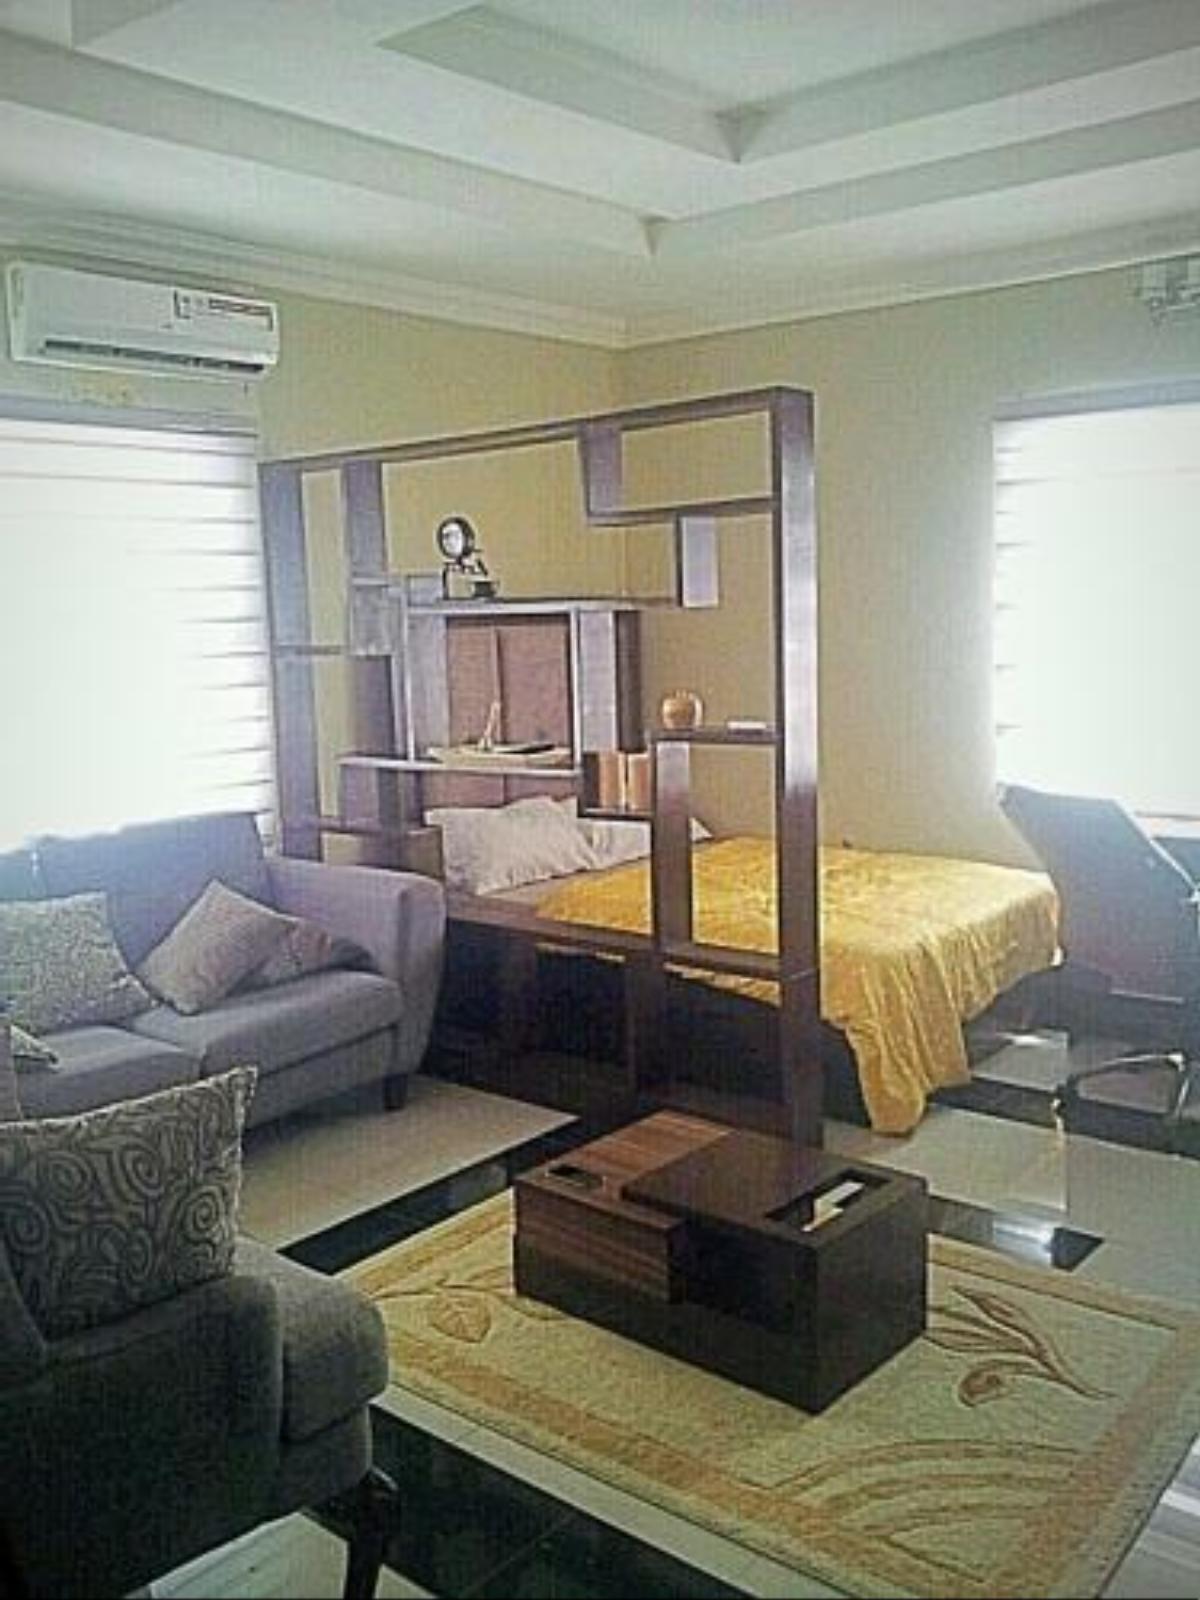 Studio Flat for Short Let Hotel Lagos Nigeria